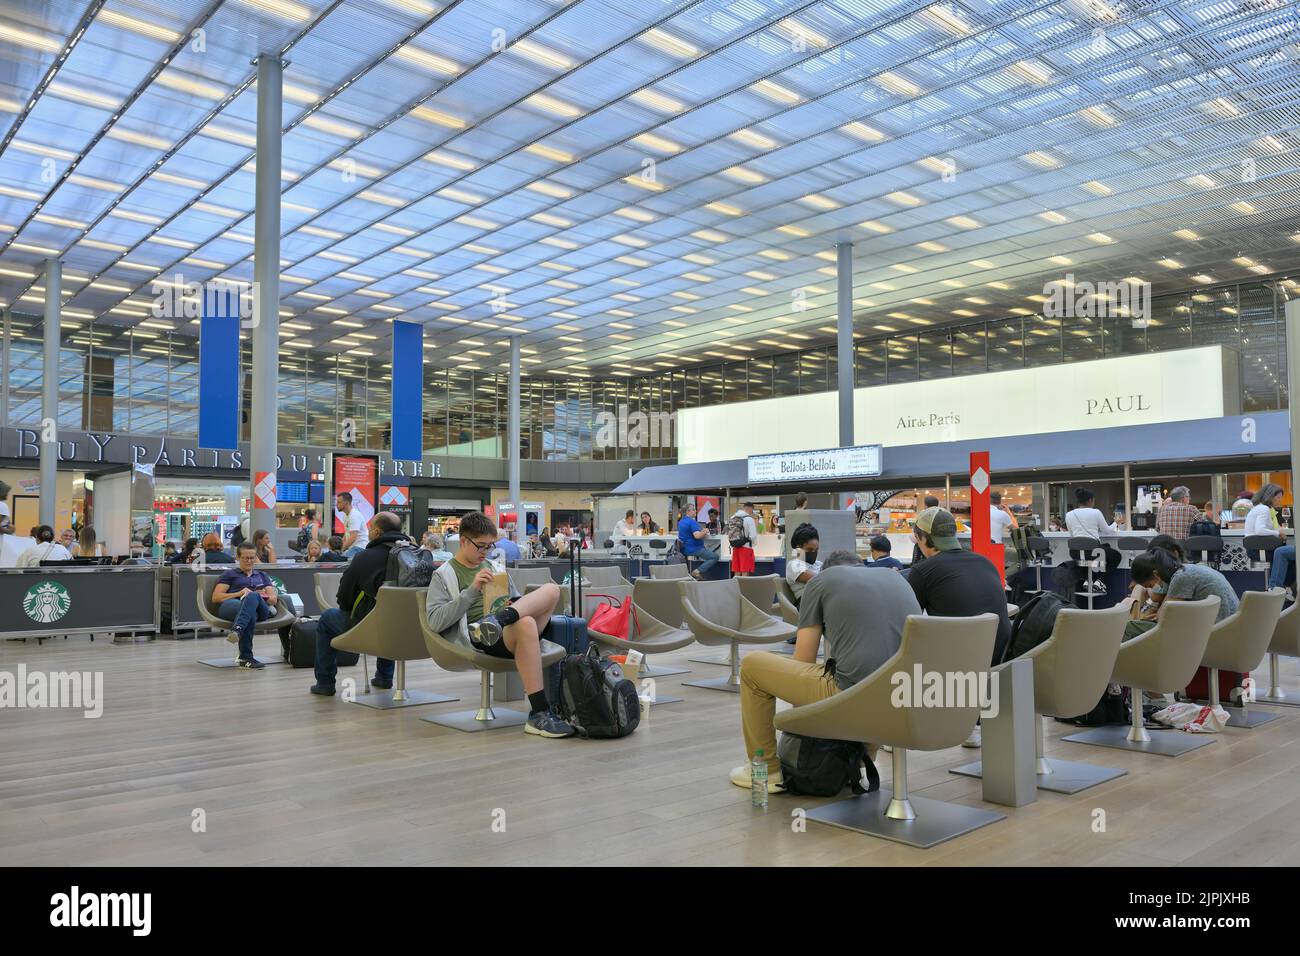 La moderna terminal M de salida de la Terminal 2E en el aeropuerto CDG, París Roissy FR Foto de stock